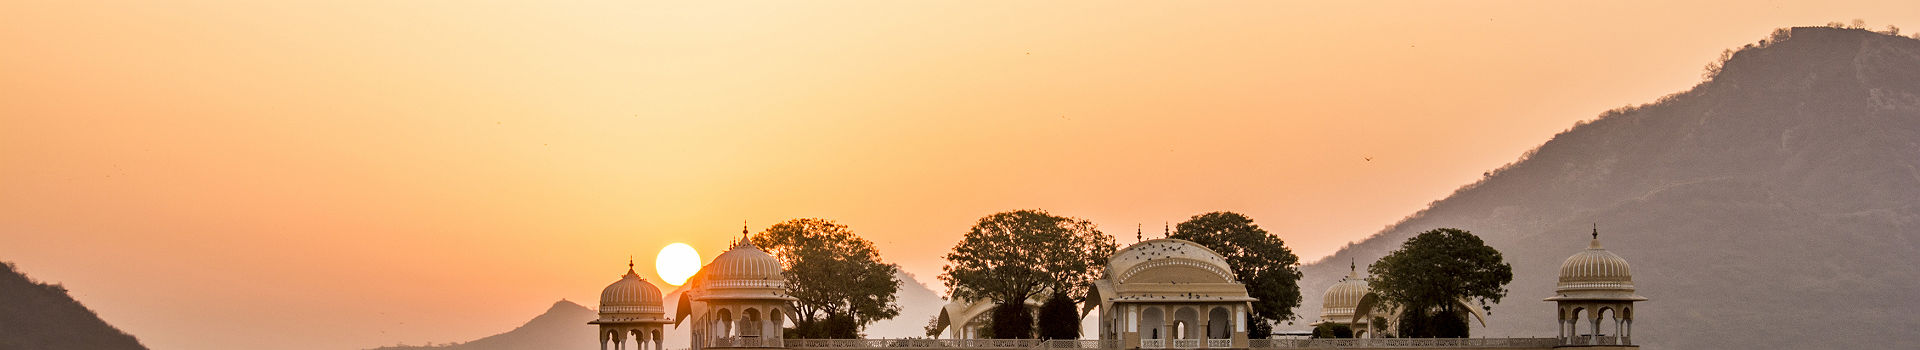 Le palais Jal Mahal à Jaipur - Inde